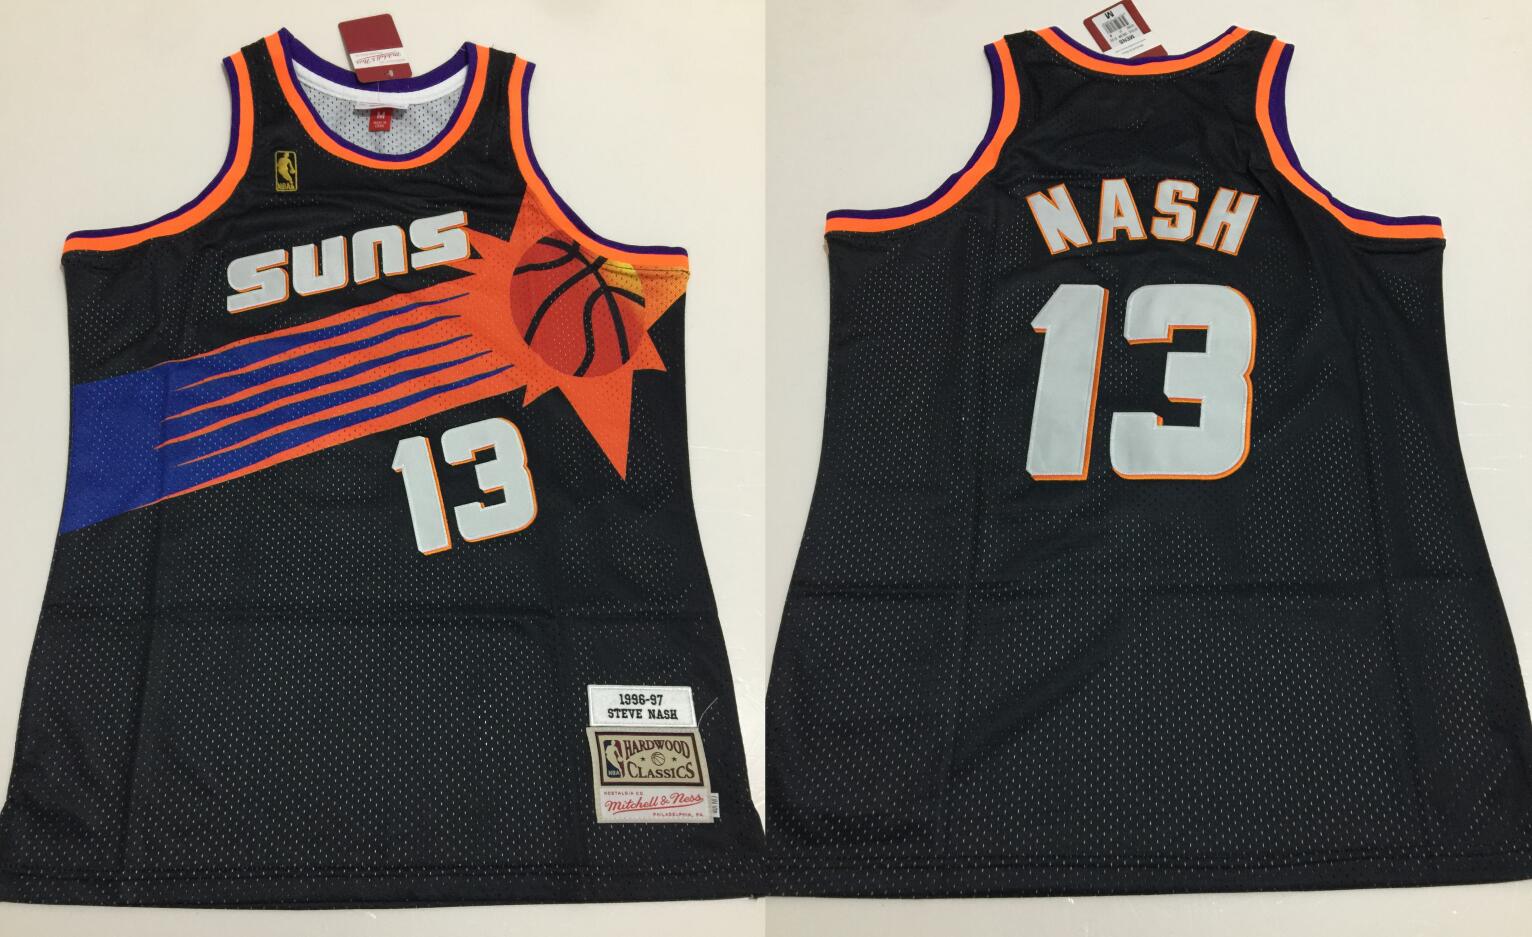  Mitchell & Ness NBA Swingman Alternate Jersey Suns 96